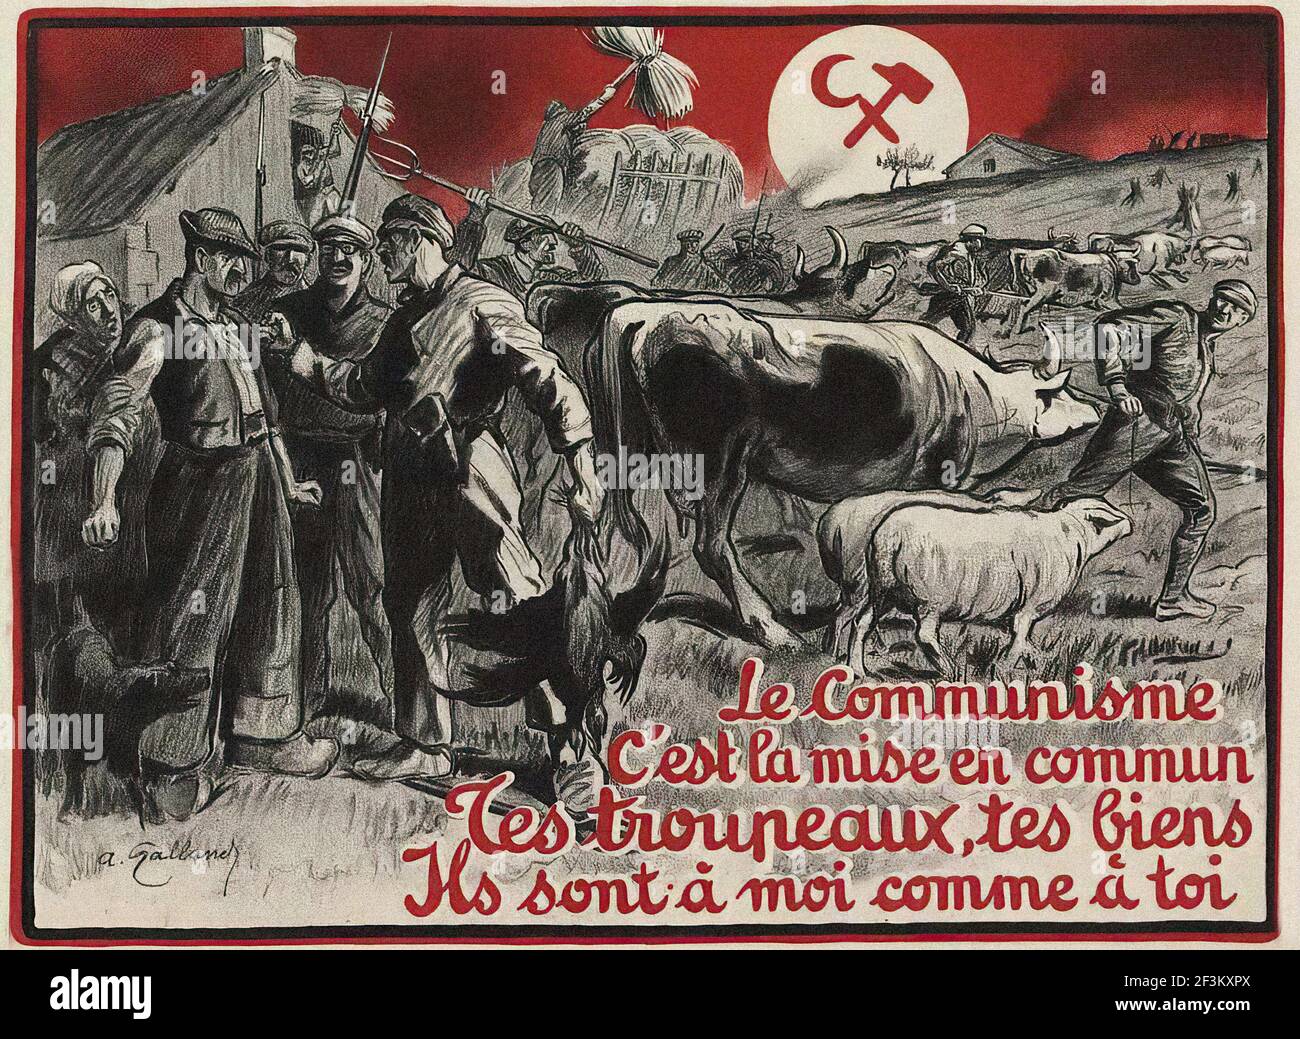 Affiche de propagande anti-communiste française. Le communisme est le démembrement forcé de toutes les propriétés privées. France, 1927 Banque D'Images